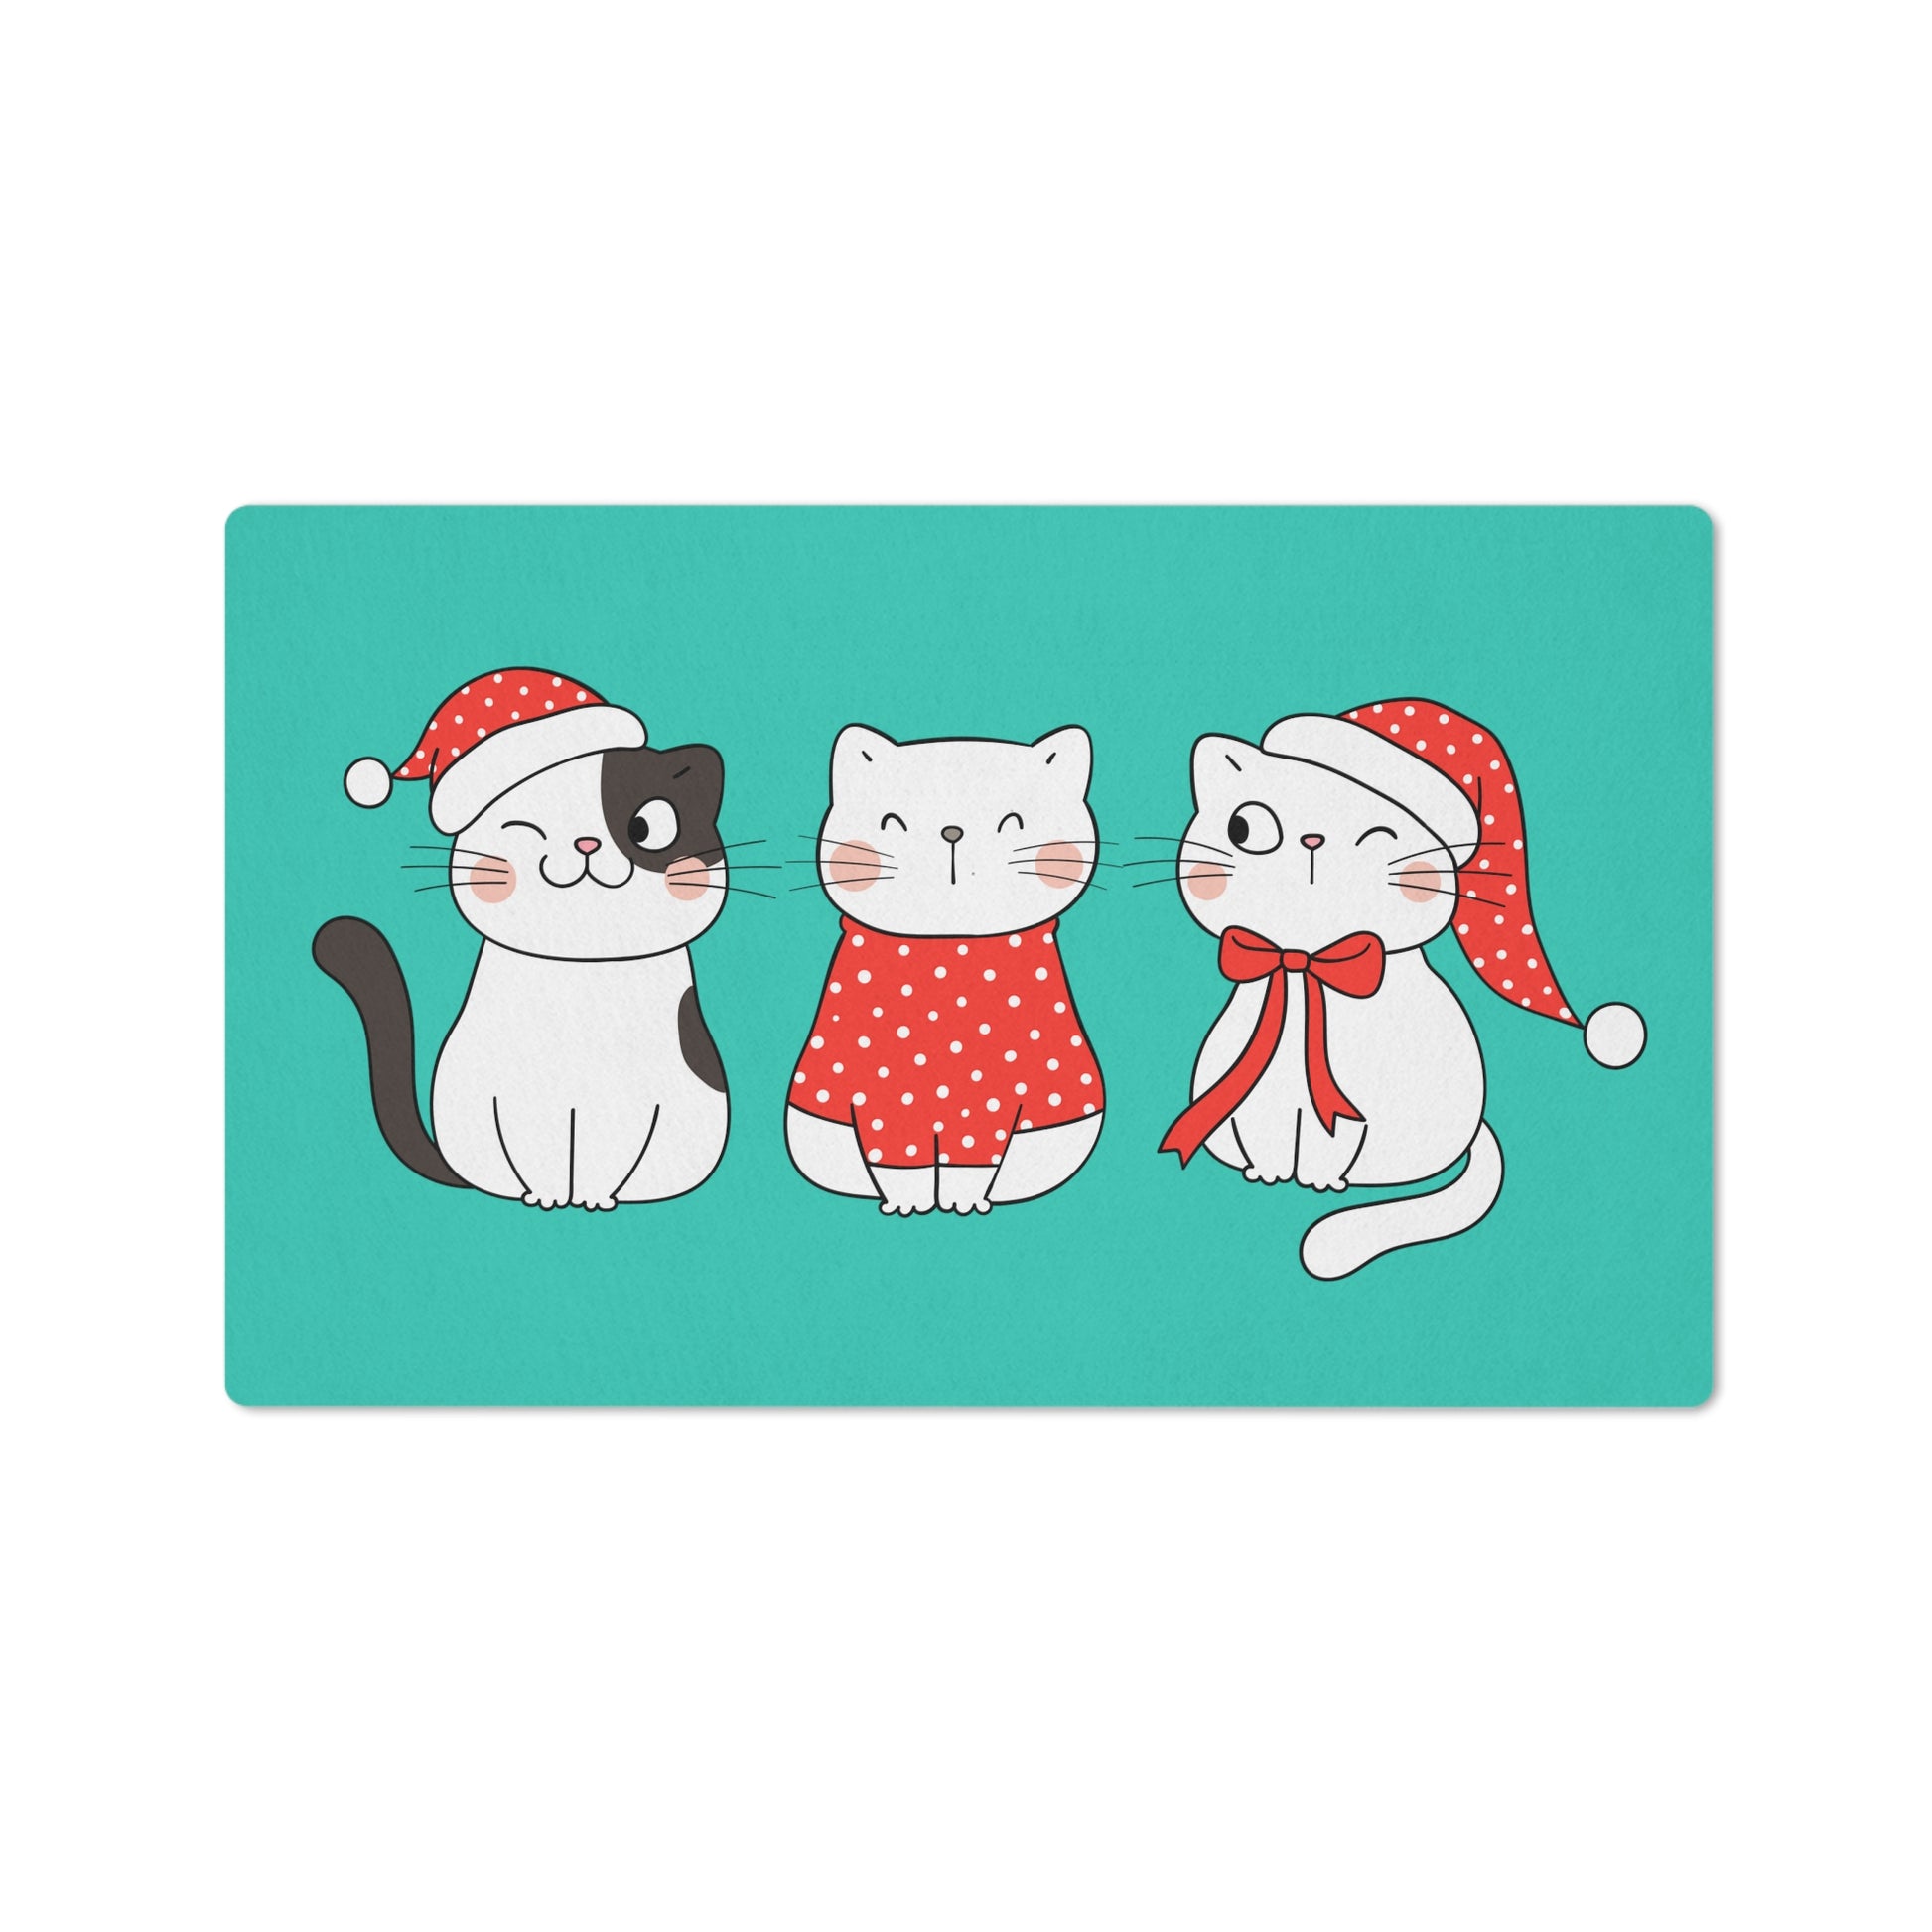 Cute cats Christmas Floor mat, Kawaii cats Merry xmas flooring mat, Cozy cats Christmas doormat, Christmas home decor, Christmas decorations